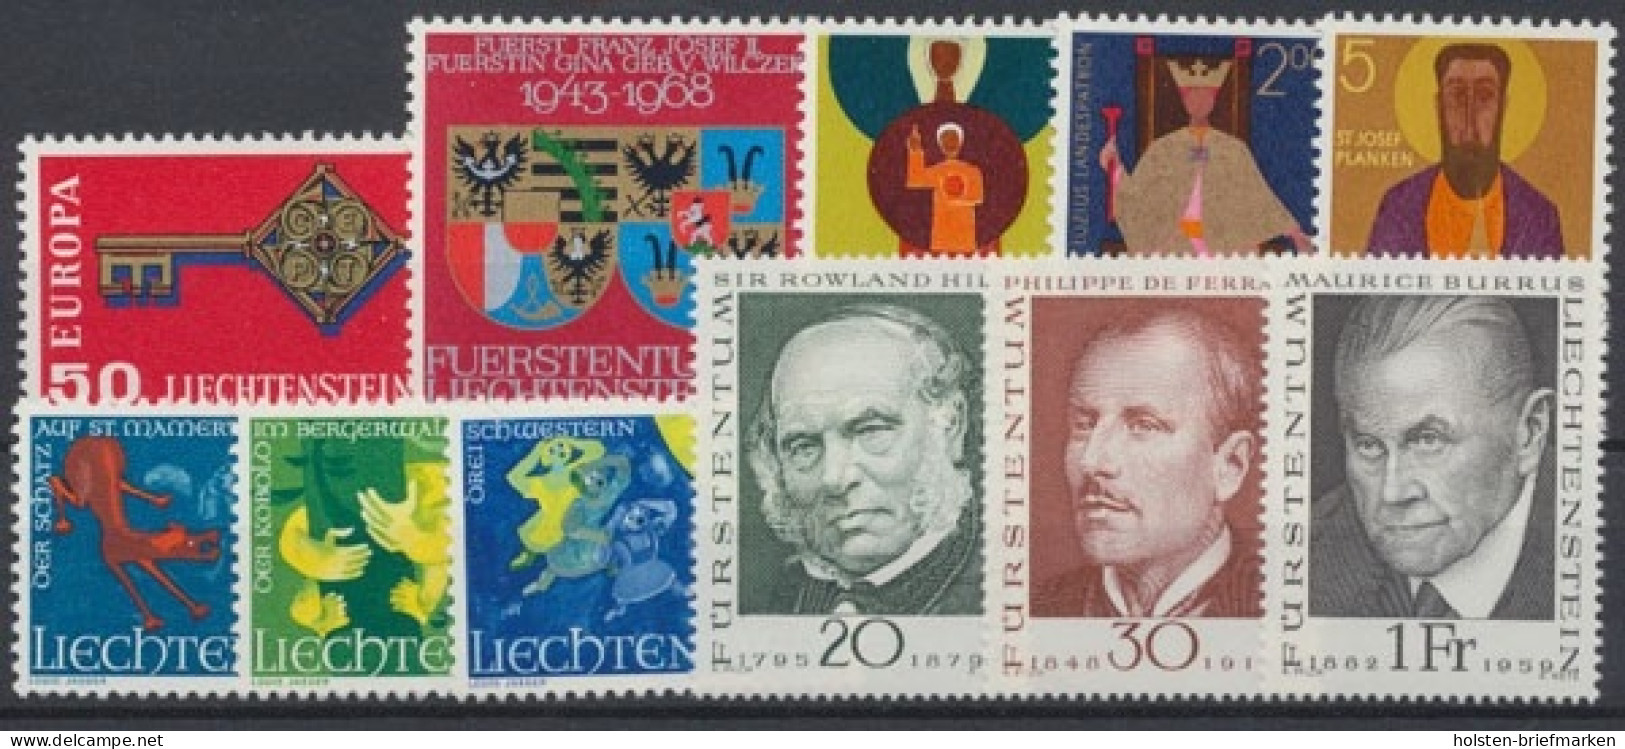 Liechtenstein, MiNr. 495-505, Jahrgang 1968, Postfrisch - Volledige Jaargang